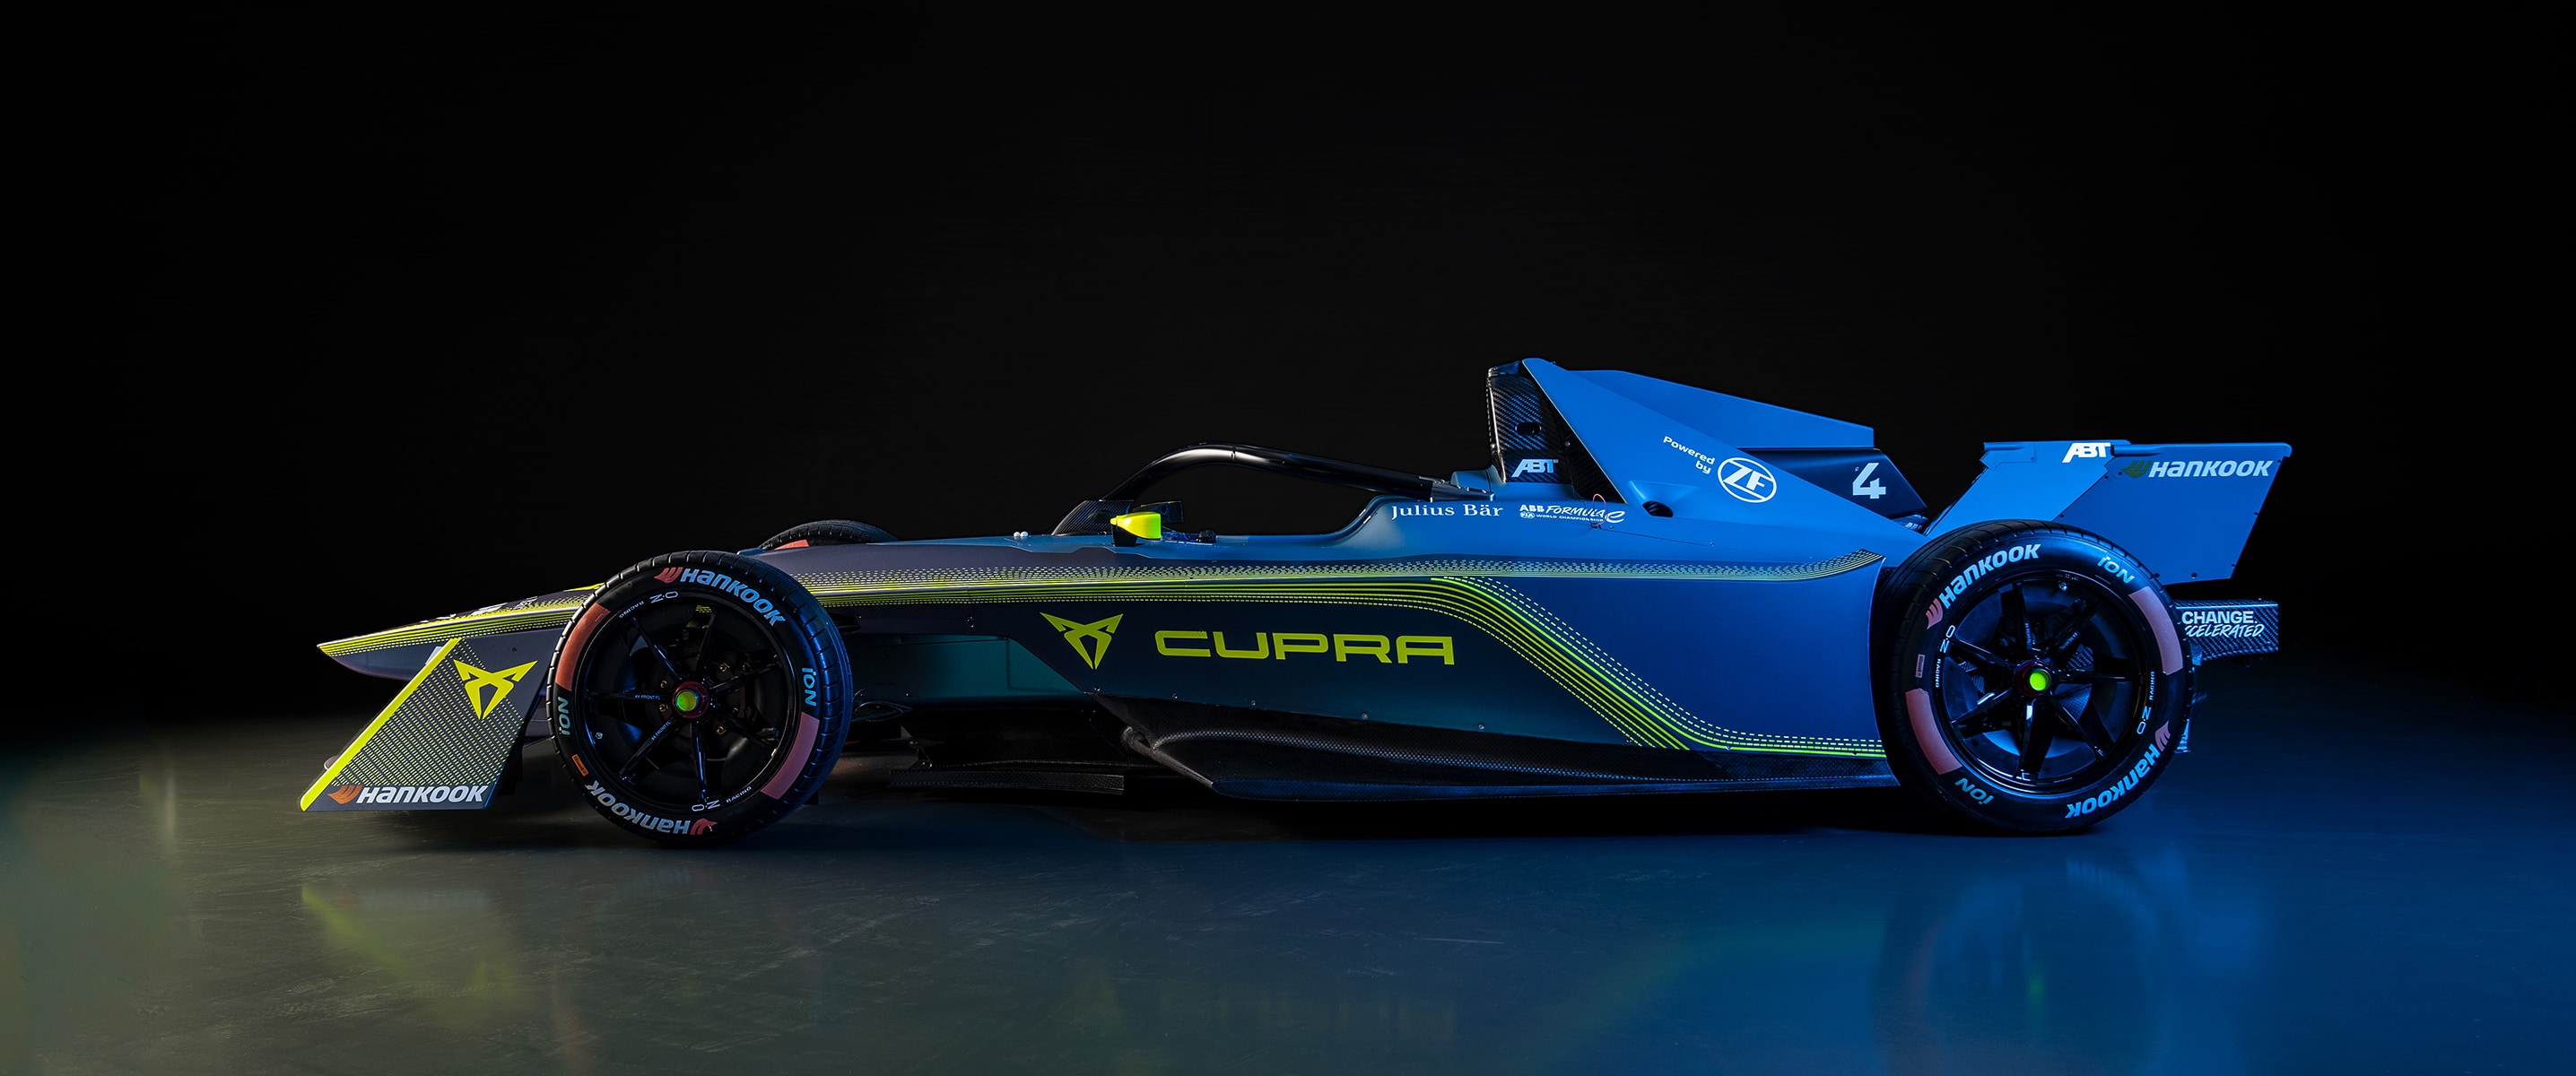 CUPRA wird Partner der Formel E